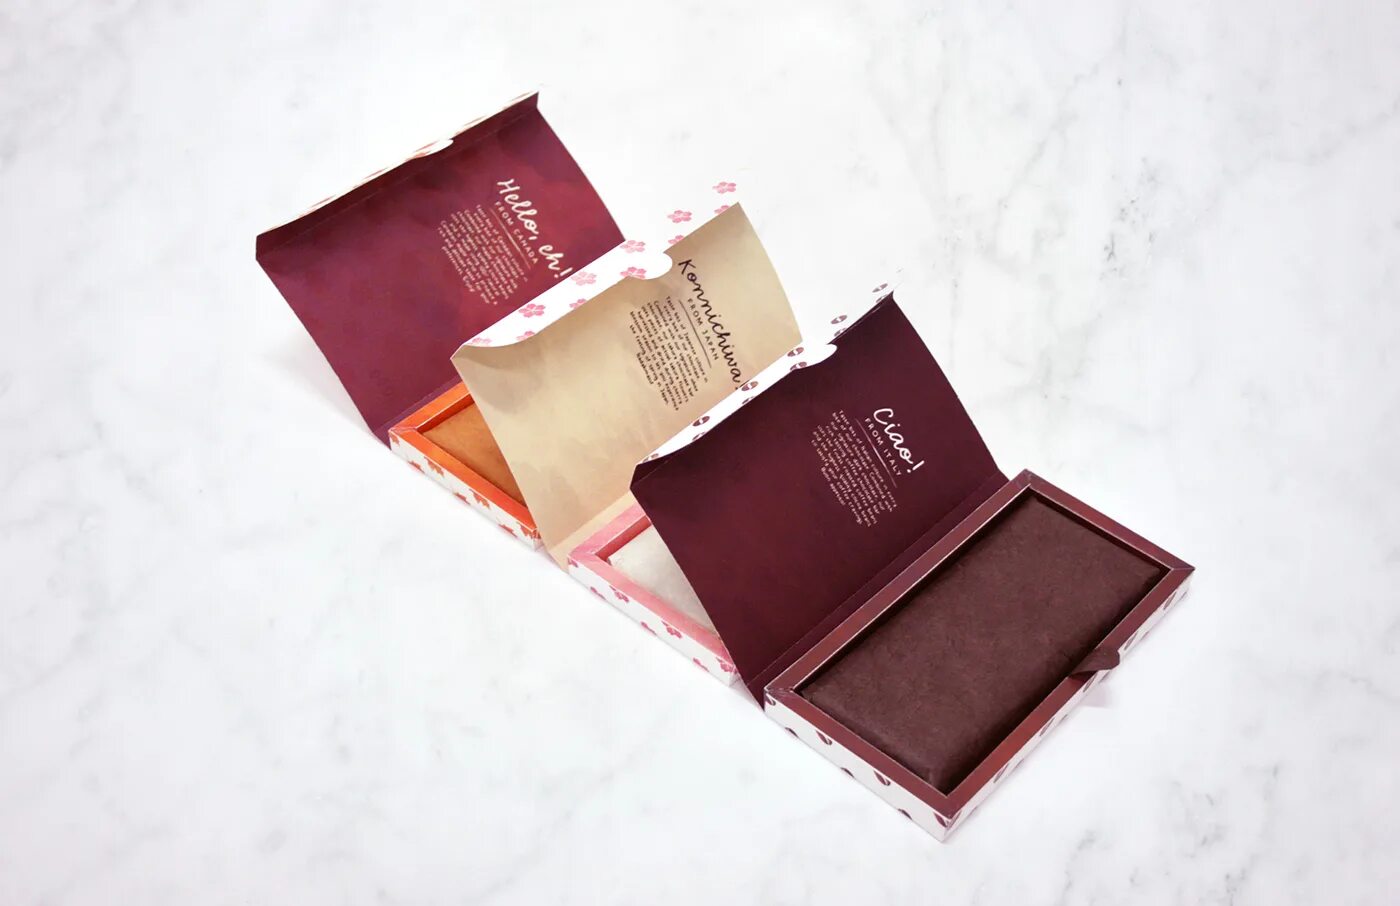 Под шоколад. Шоколад в упаковке. Шоколадки в упаковке. Упаковка элитного шоколада. Экологичная упаковка шоколада.